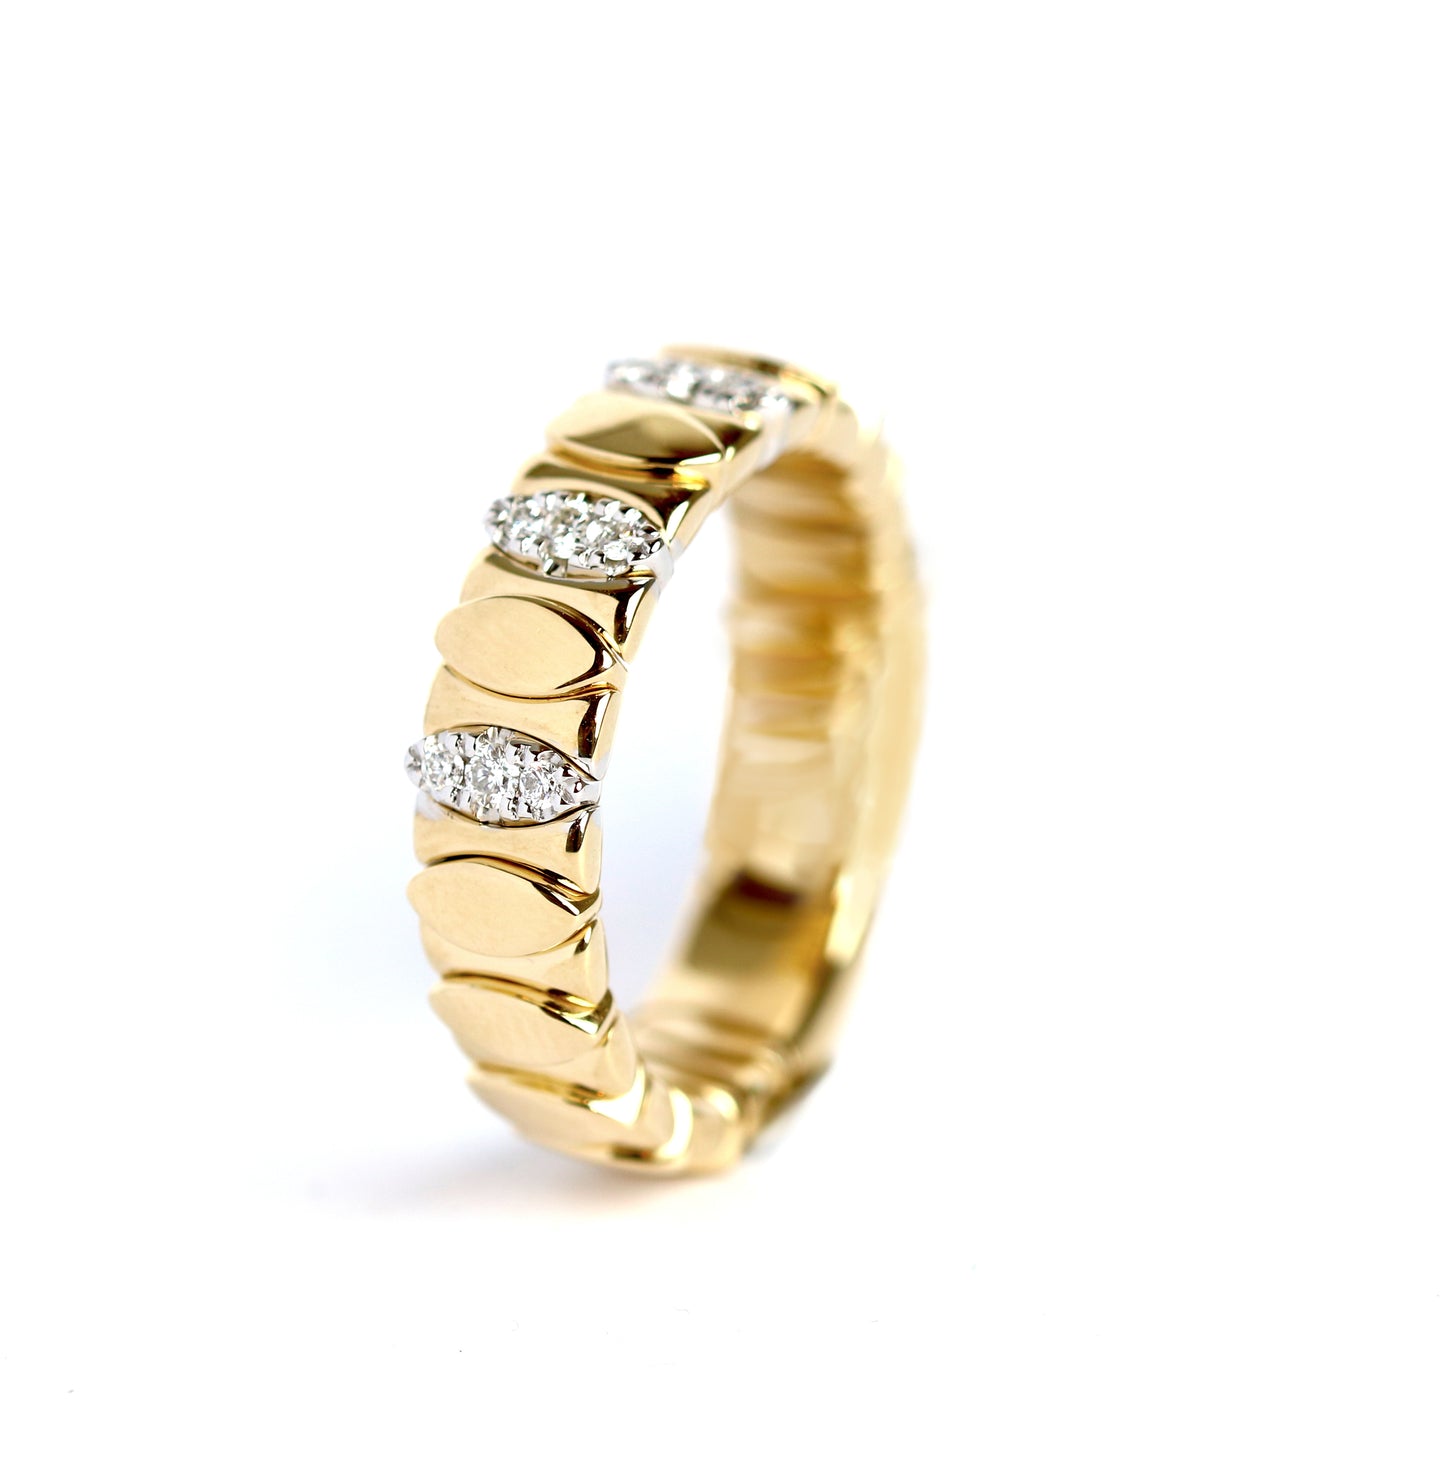 WILHELM MÜLLER - Ring felxibel in Gold mit Brillanten